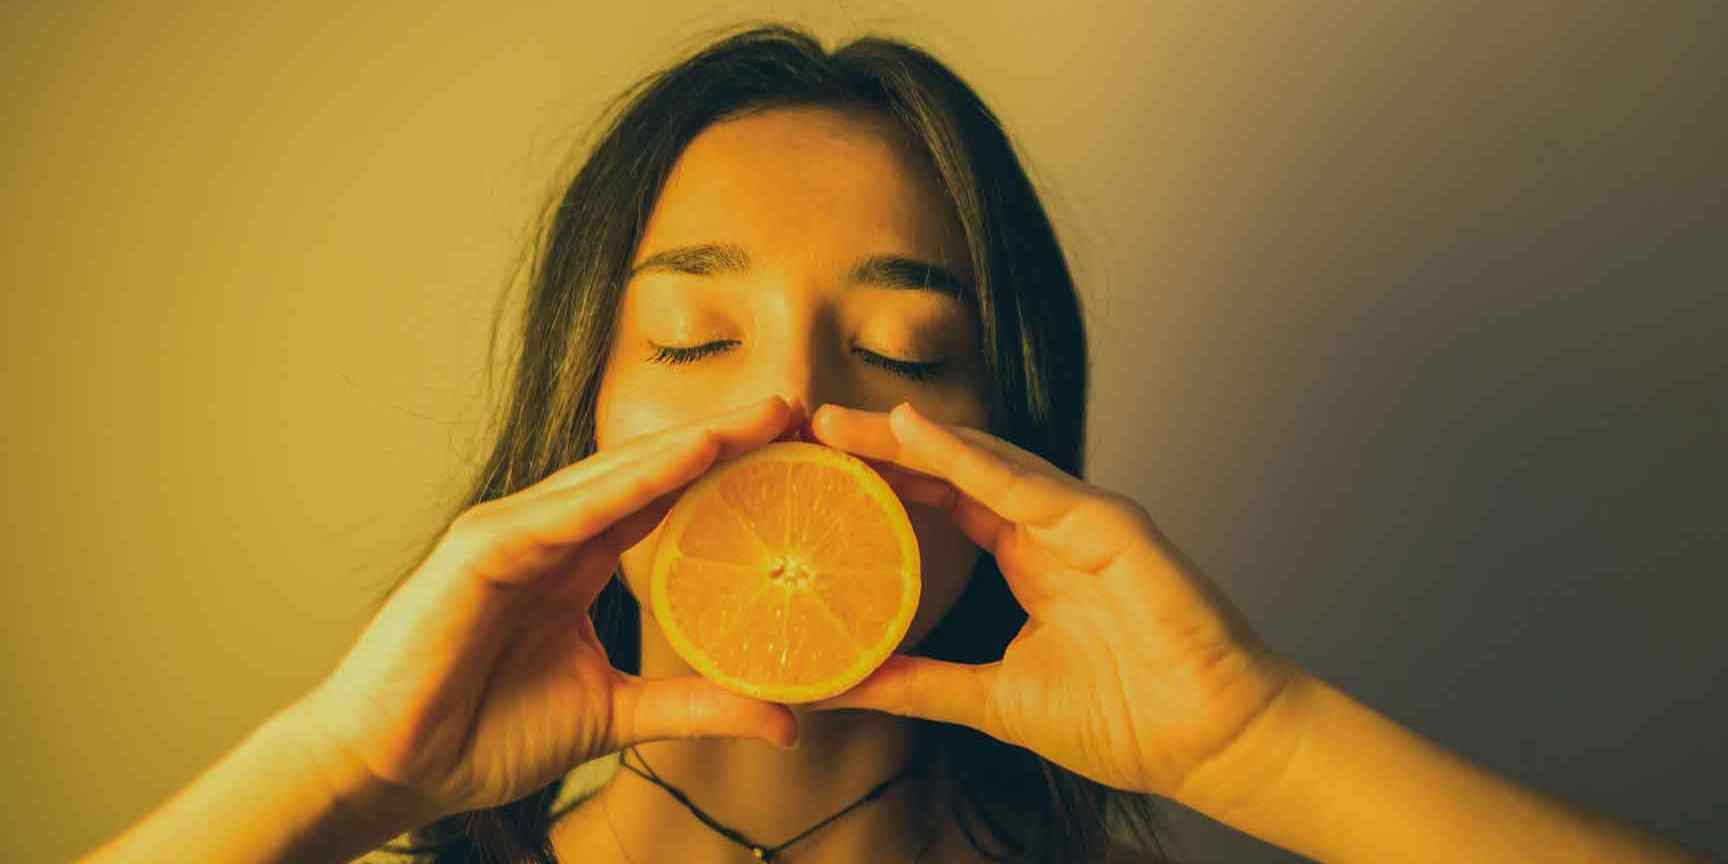 Image of girl eating orange for the Skincare Diet